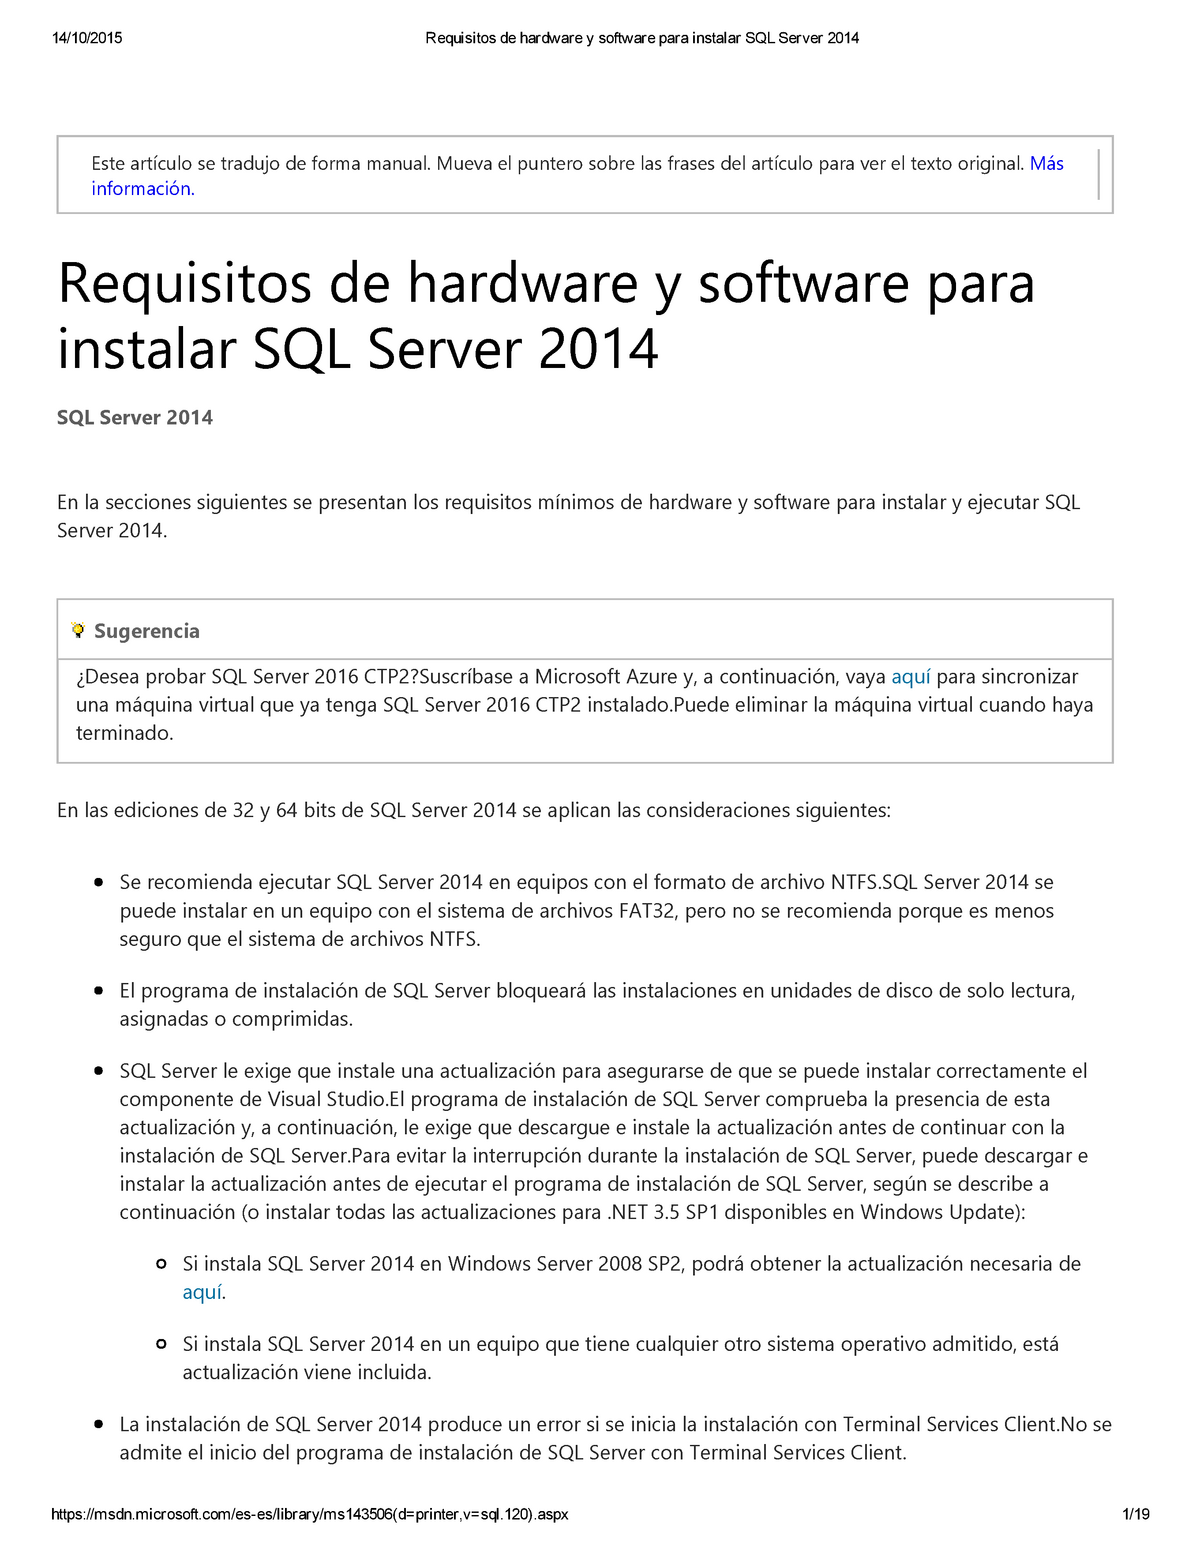 Requisitos De Hardware Y Software Para Instalar Sql Server 2014 Este Artículo Se Tradujo De 0216